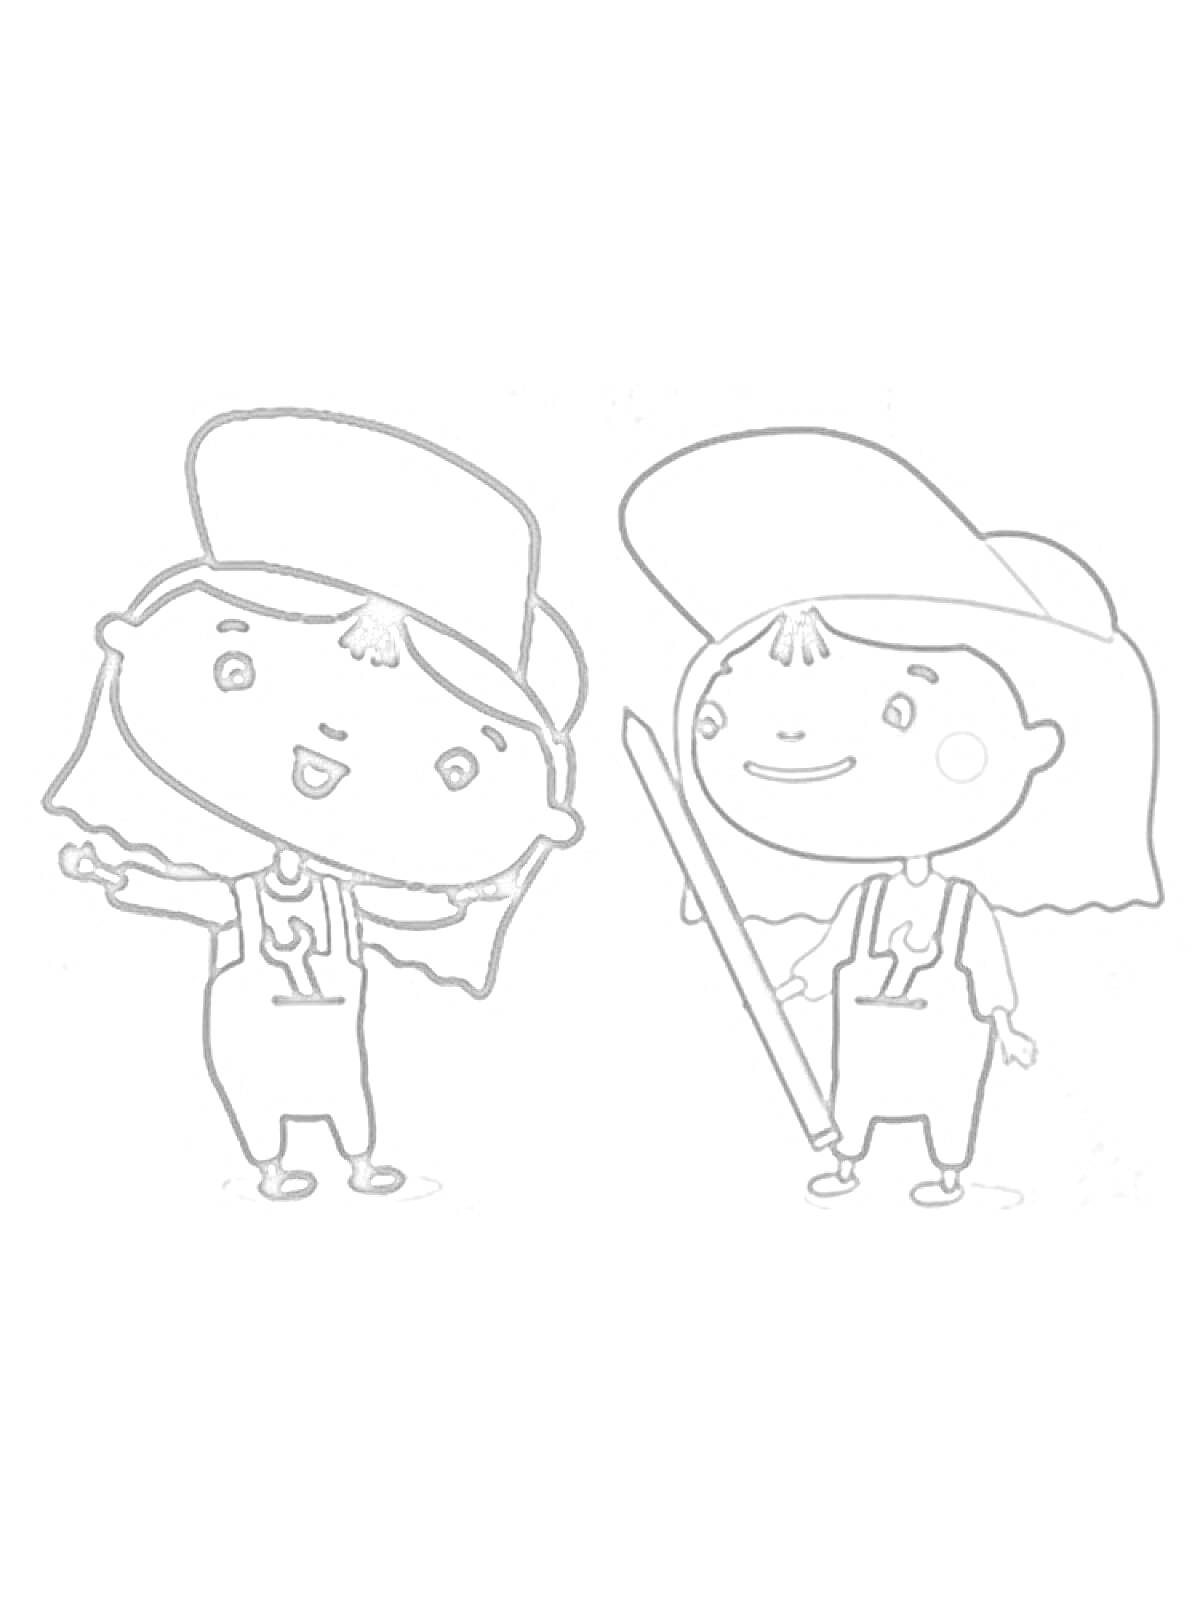 Раскраска Две девочки в кепках и комбинезонах, одна держит палку